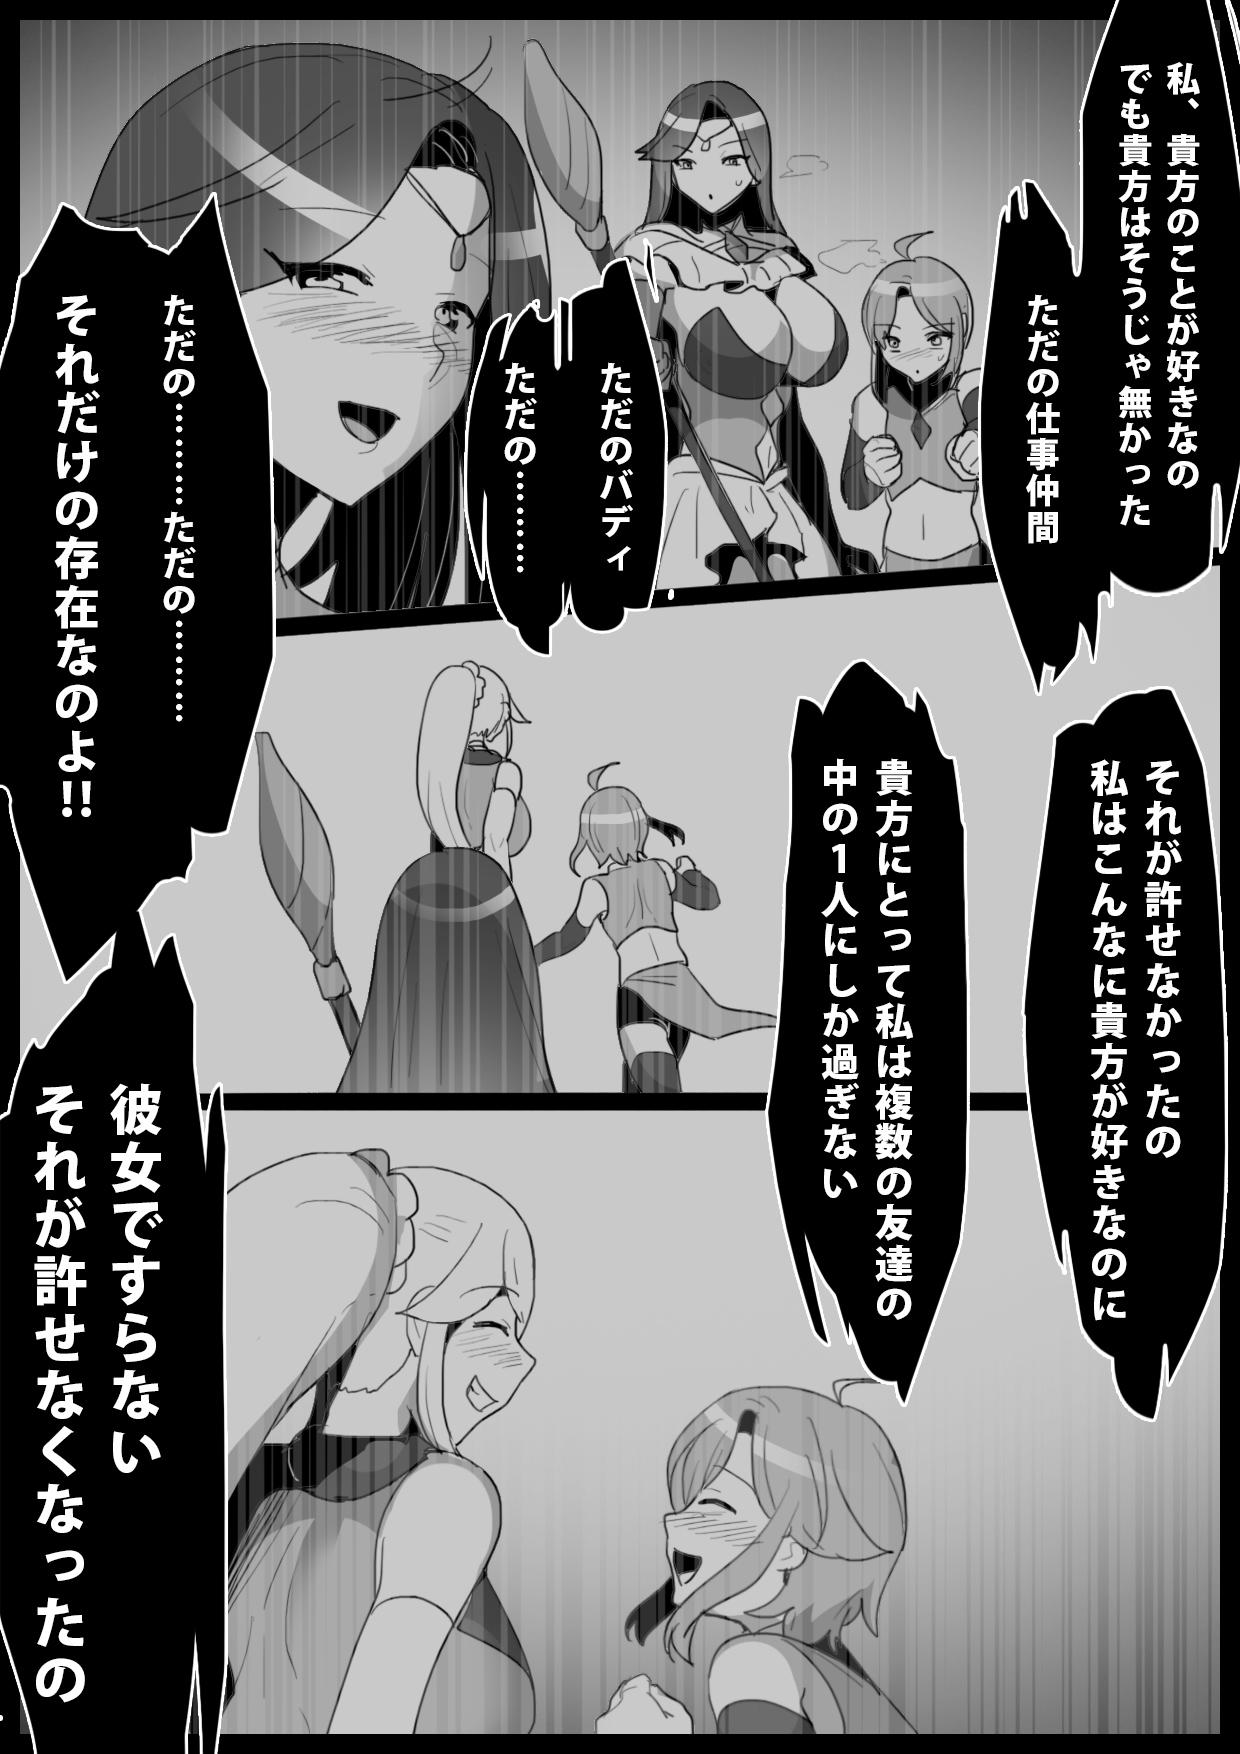 Blackcock mahō senshi, shinjiteita nakama ni uragirare, kyūshūsareru hanashi - Original Humiliation - Page 5